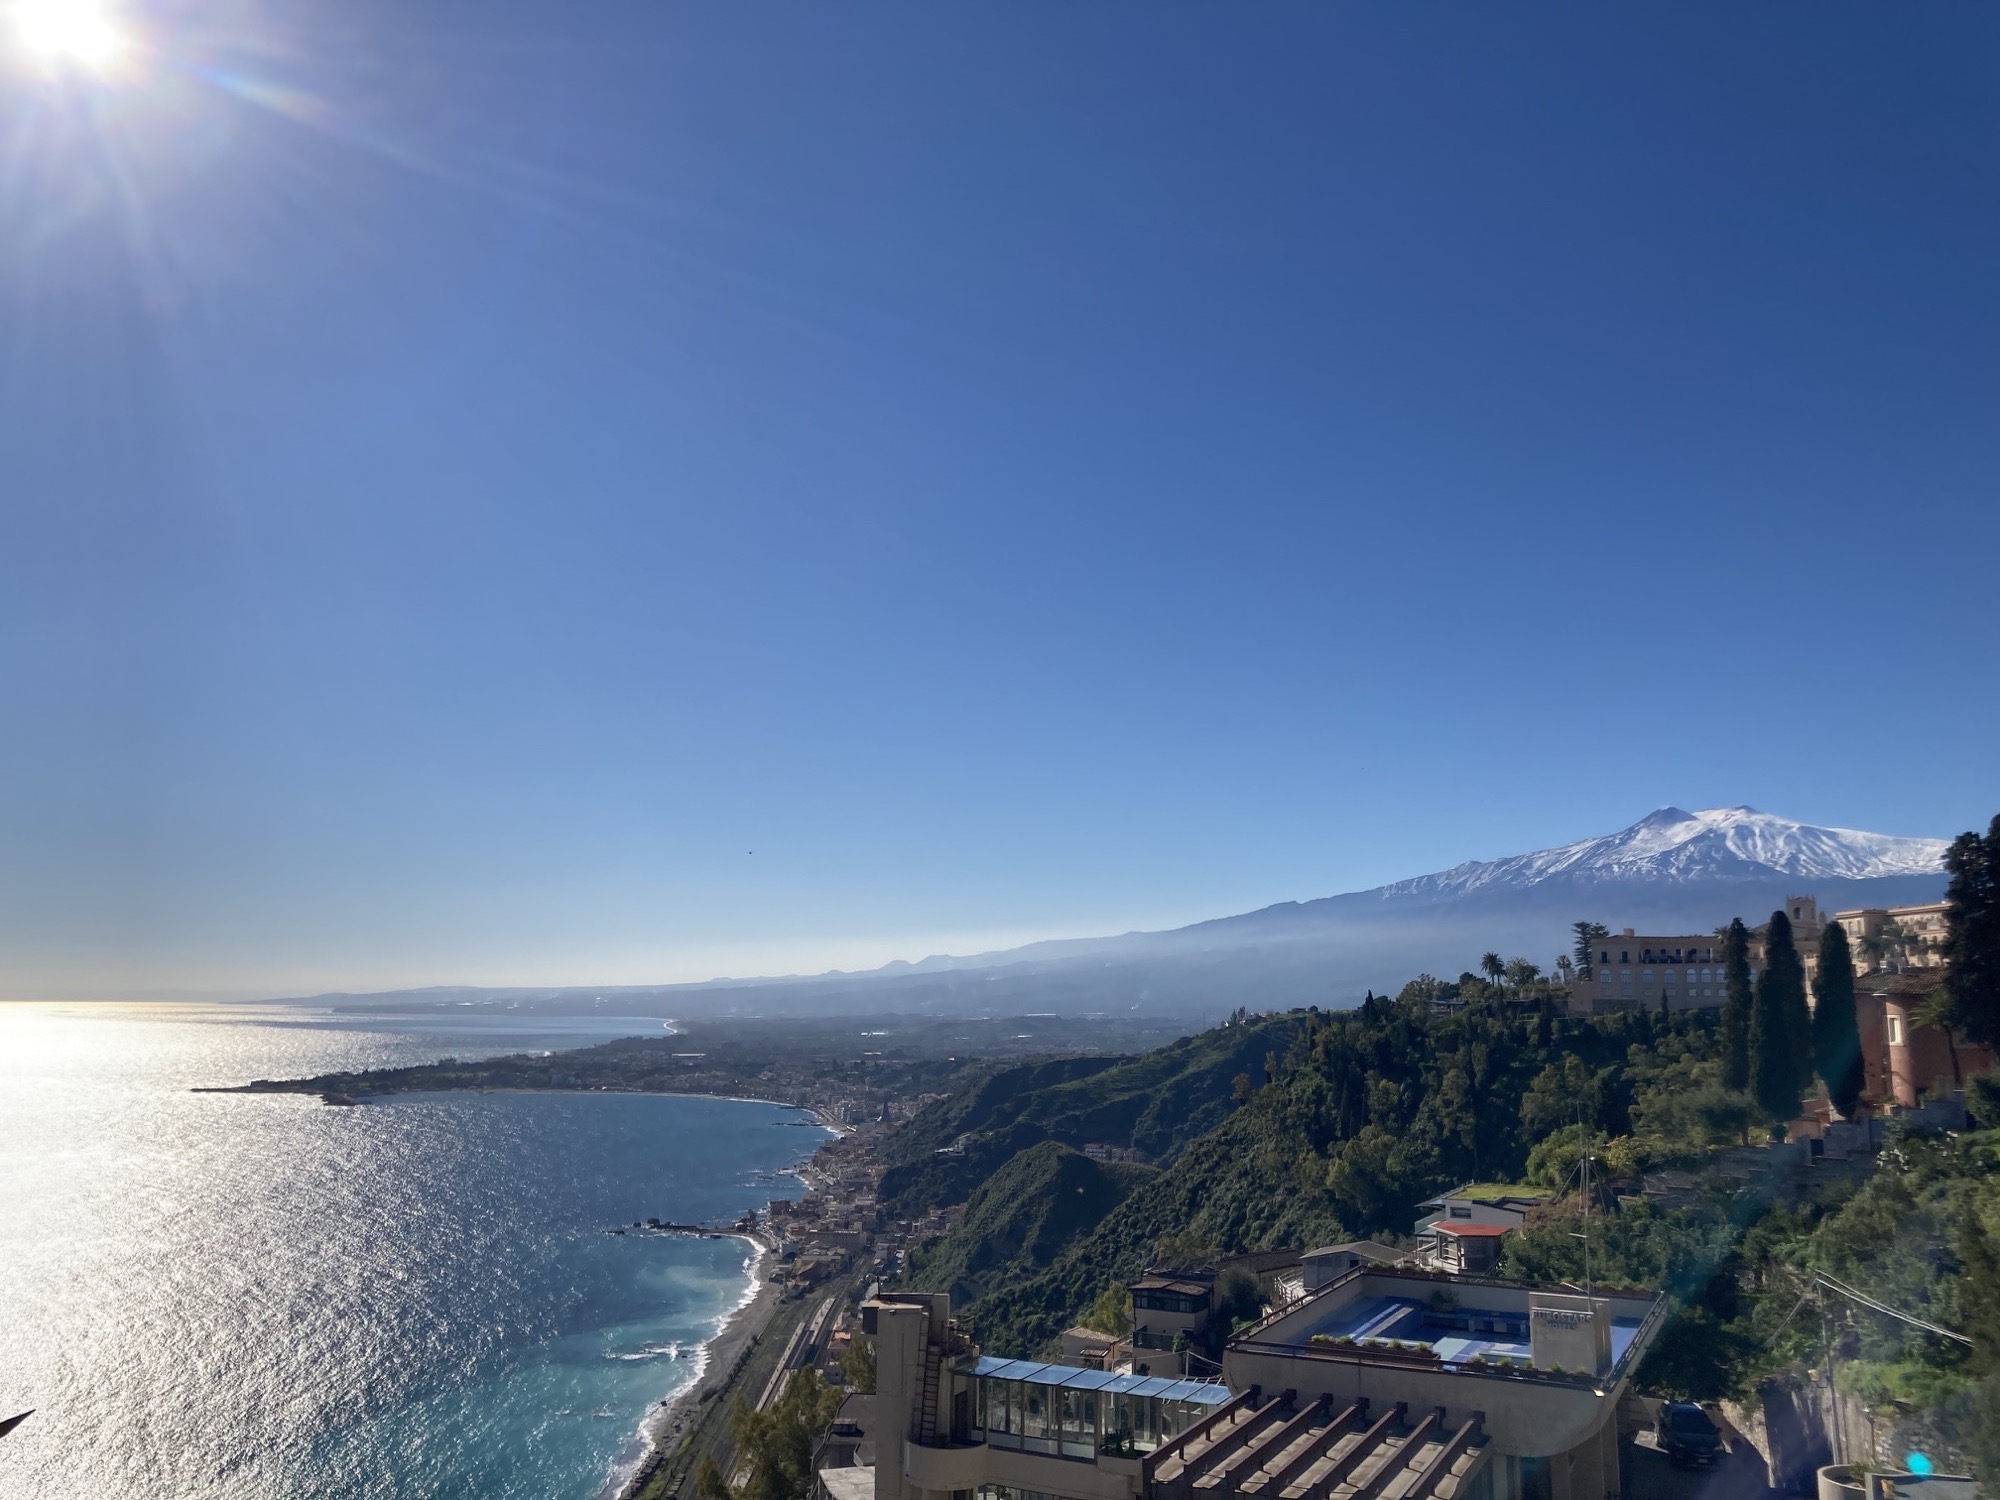 Aussicht nach dem Aufstieg nach Taormina, links Meer und Sonne, rechts im Hintergrund der schneebedeckte Gipfel des Ätnas